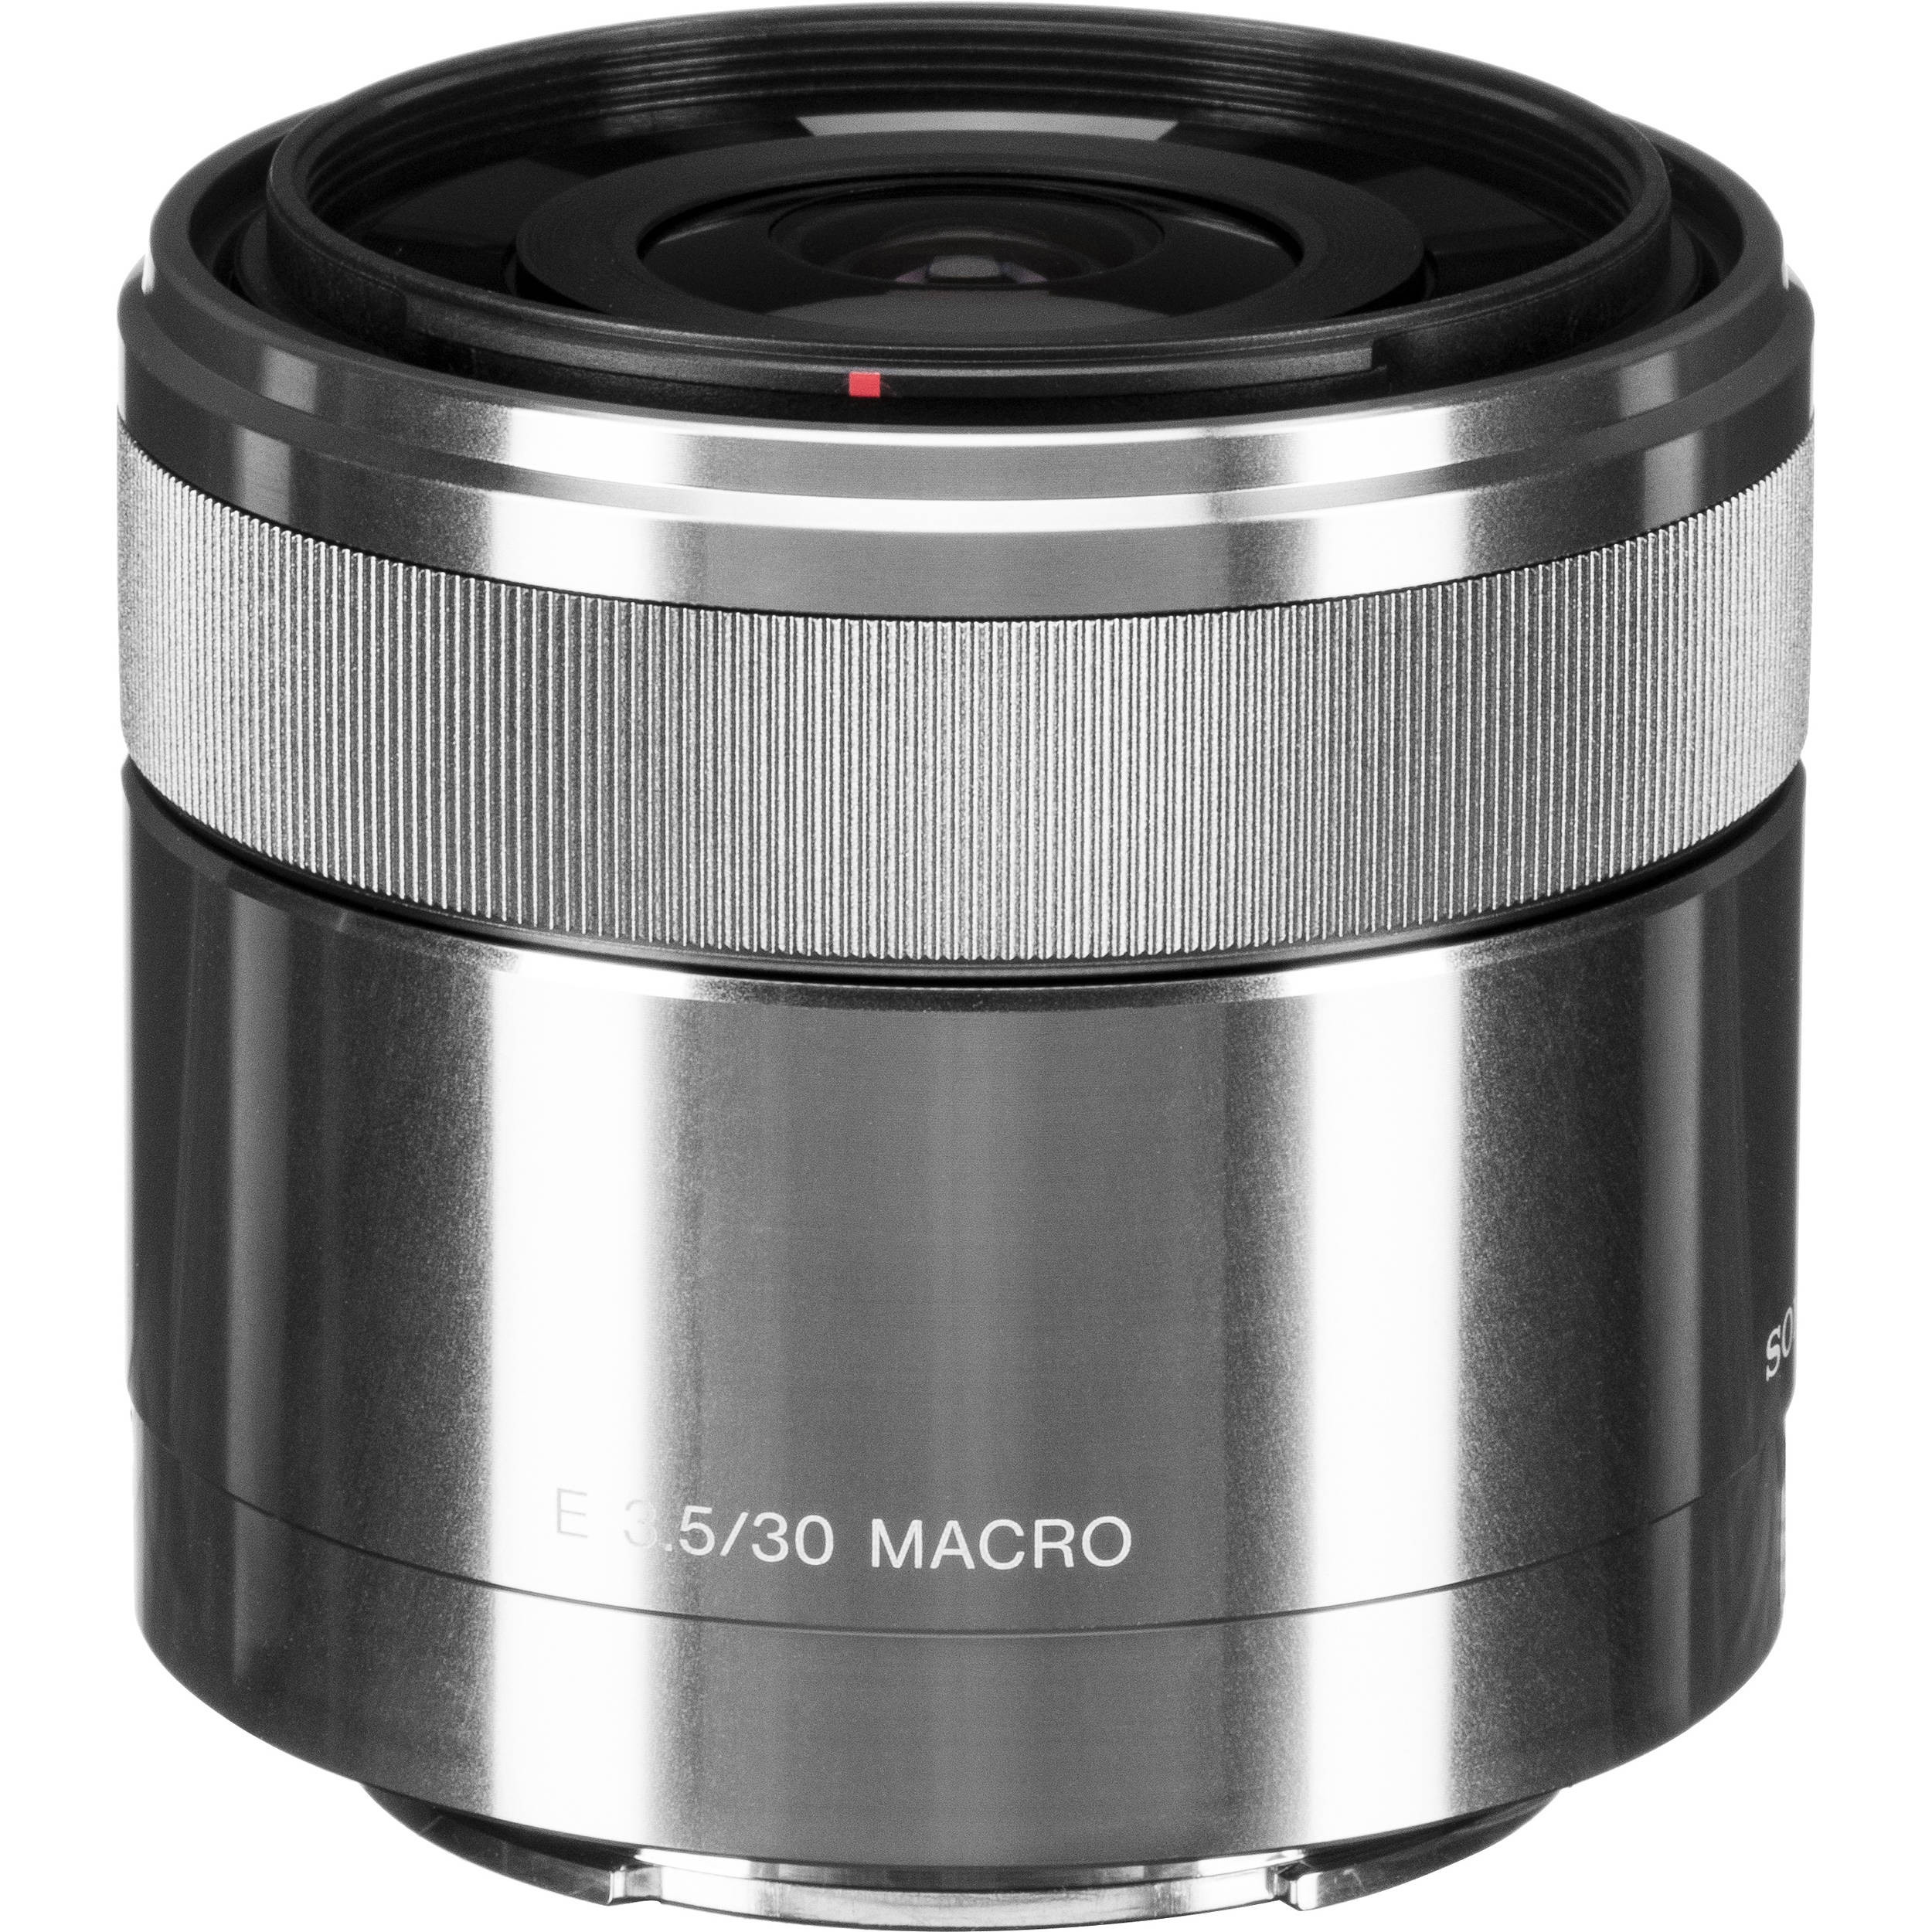 ソニー E 30mm F3.5 Macro [SEL30M35] 短焦点レンズ - レンズ(単焦点)